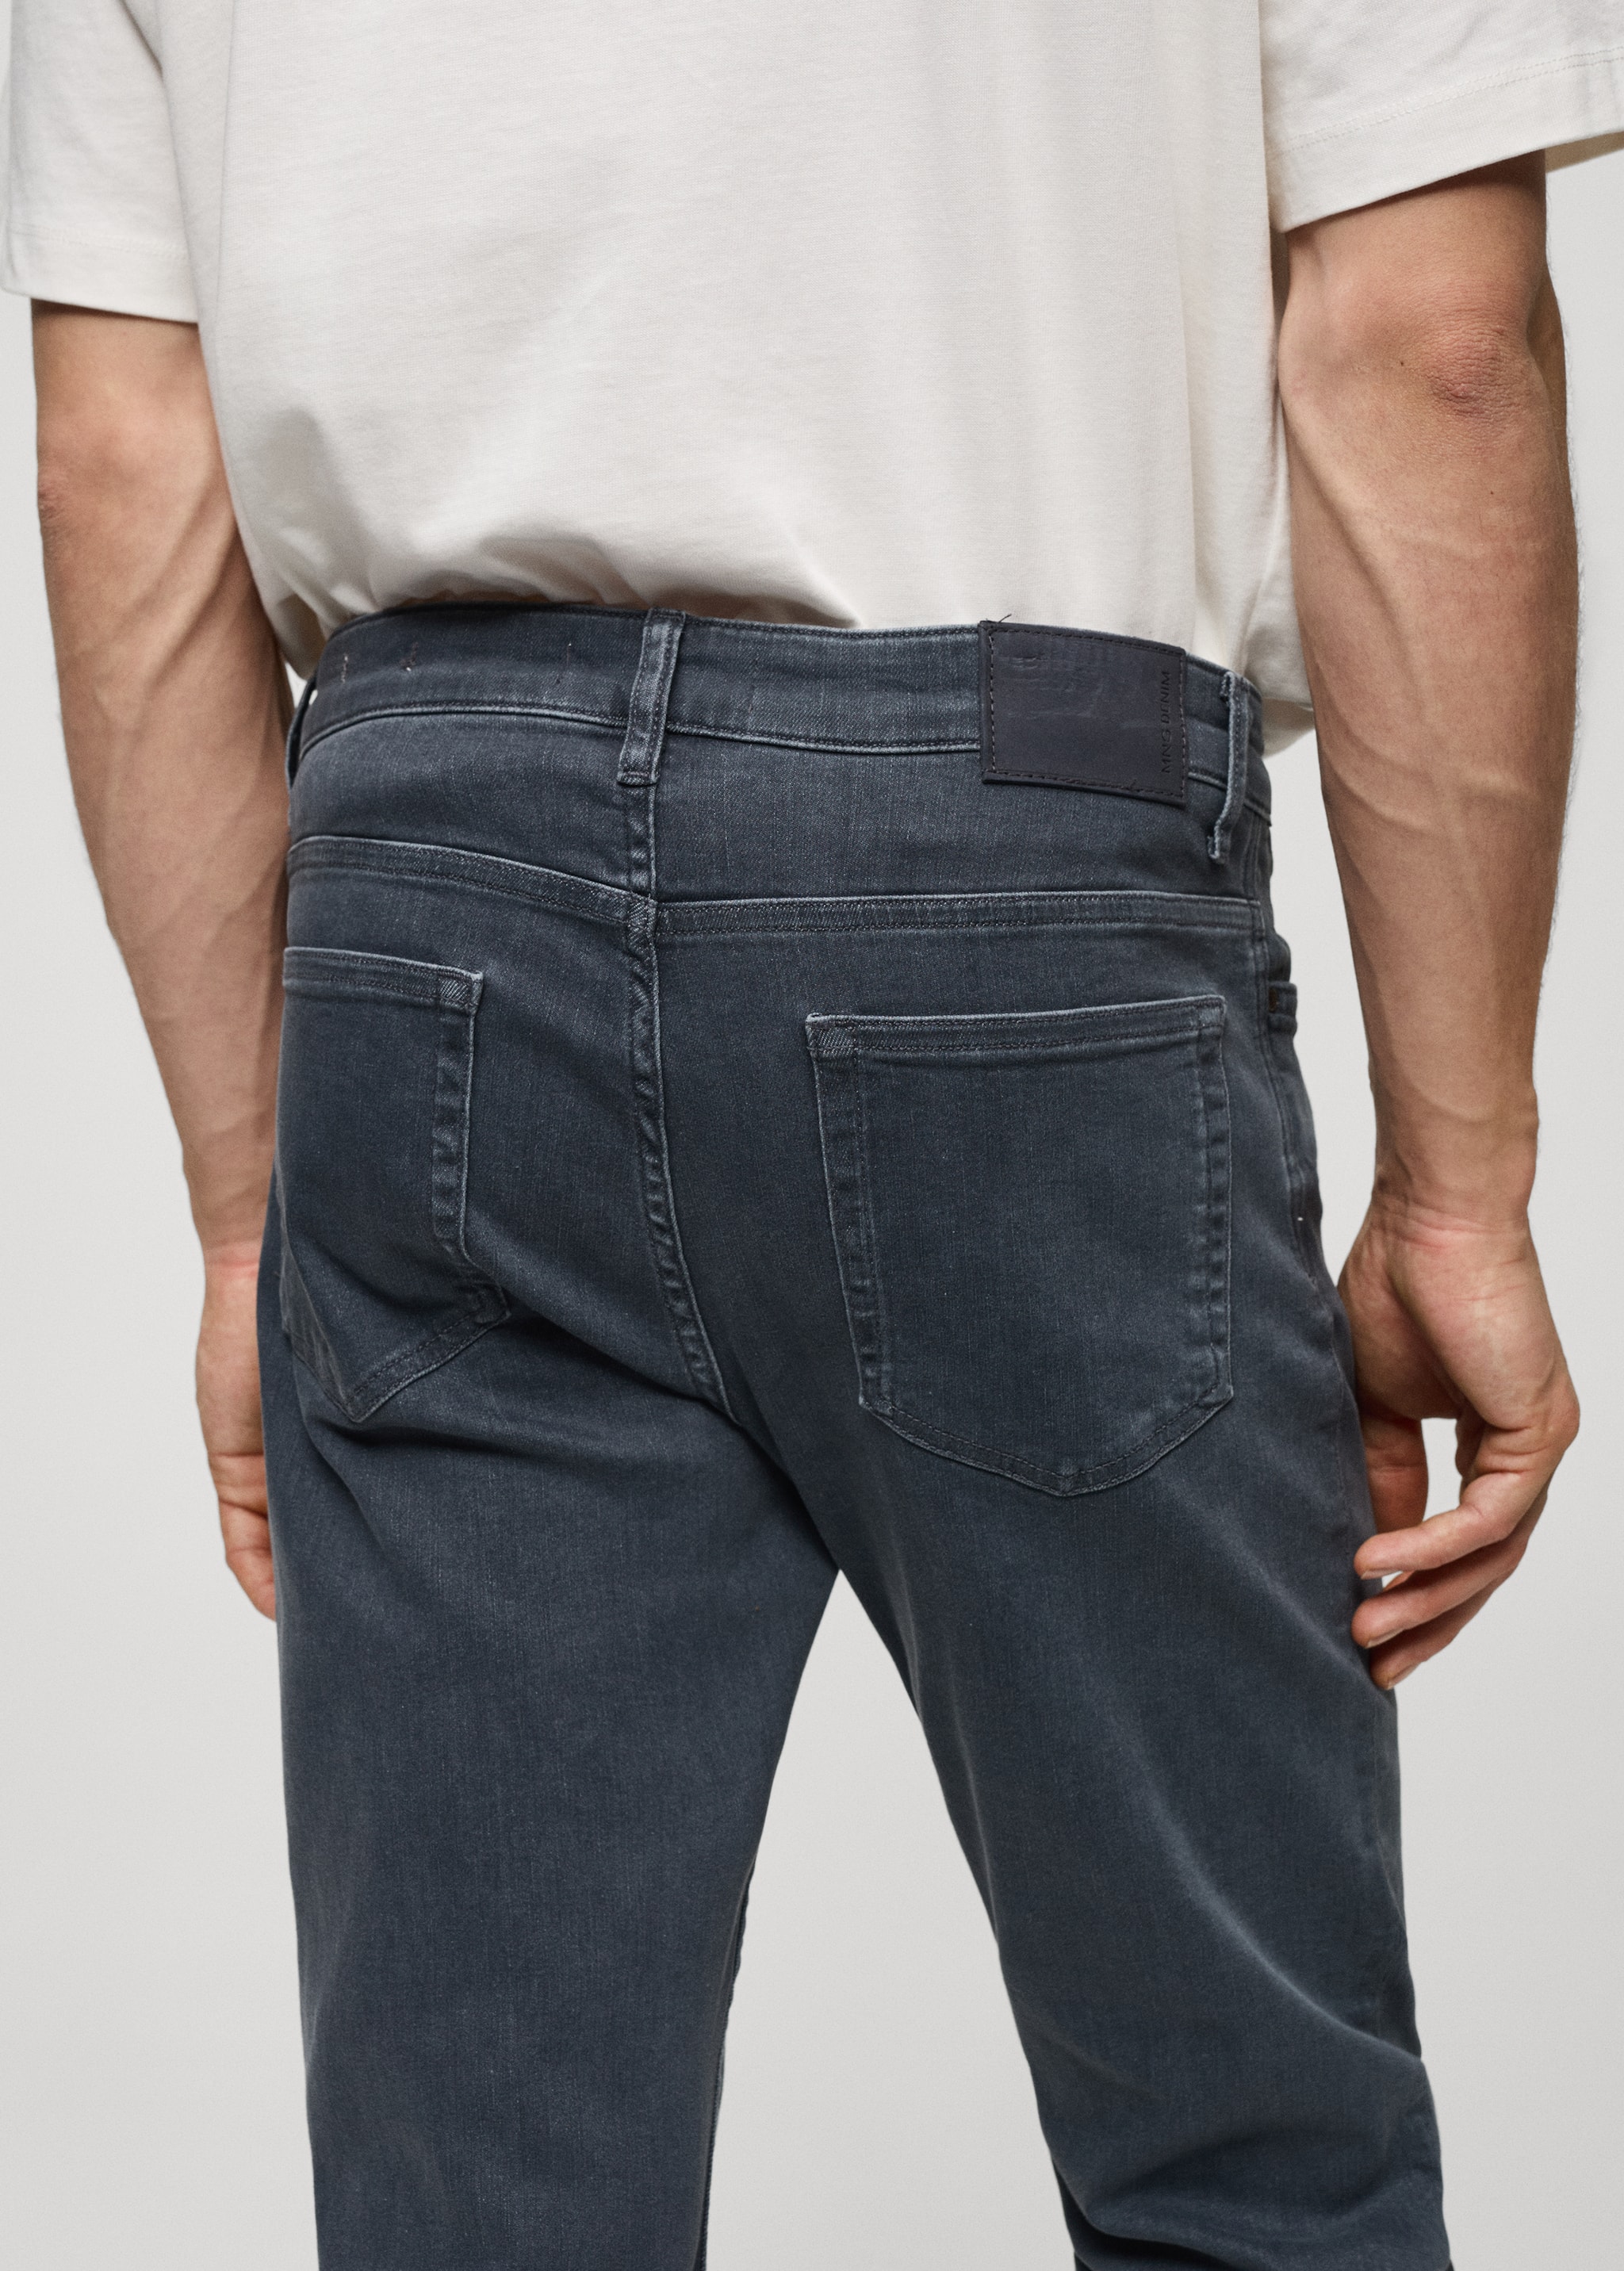 Jeans Patrick slim fit Ultra Soft Touch - Pormenor do artigo 4